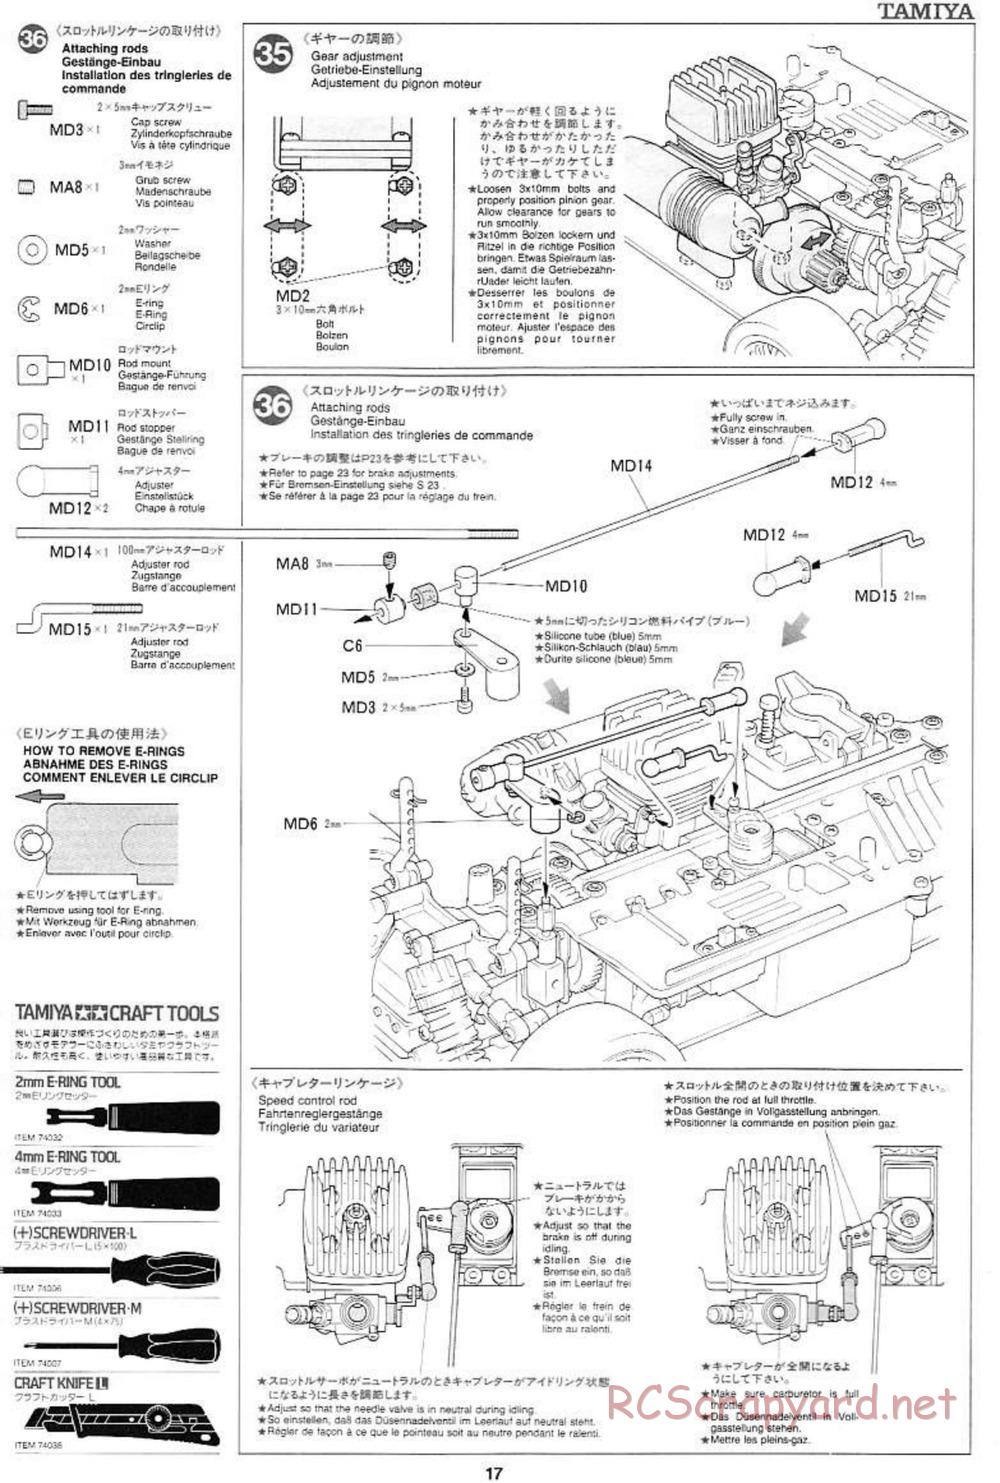 Tamiya - Mercedes CLK GTR Team Sportswear - TG10 Mk.1 Chassis - Manual - Page 17